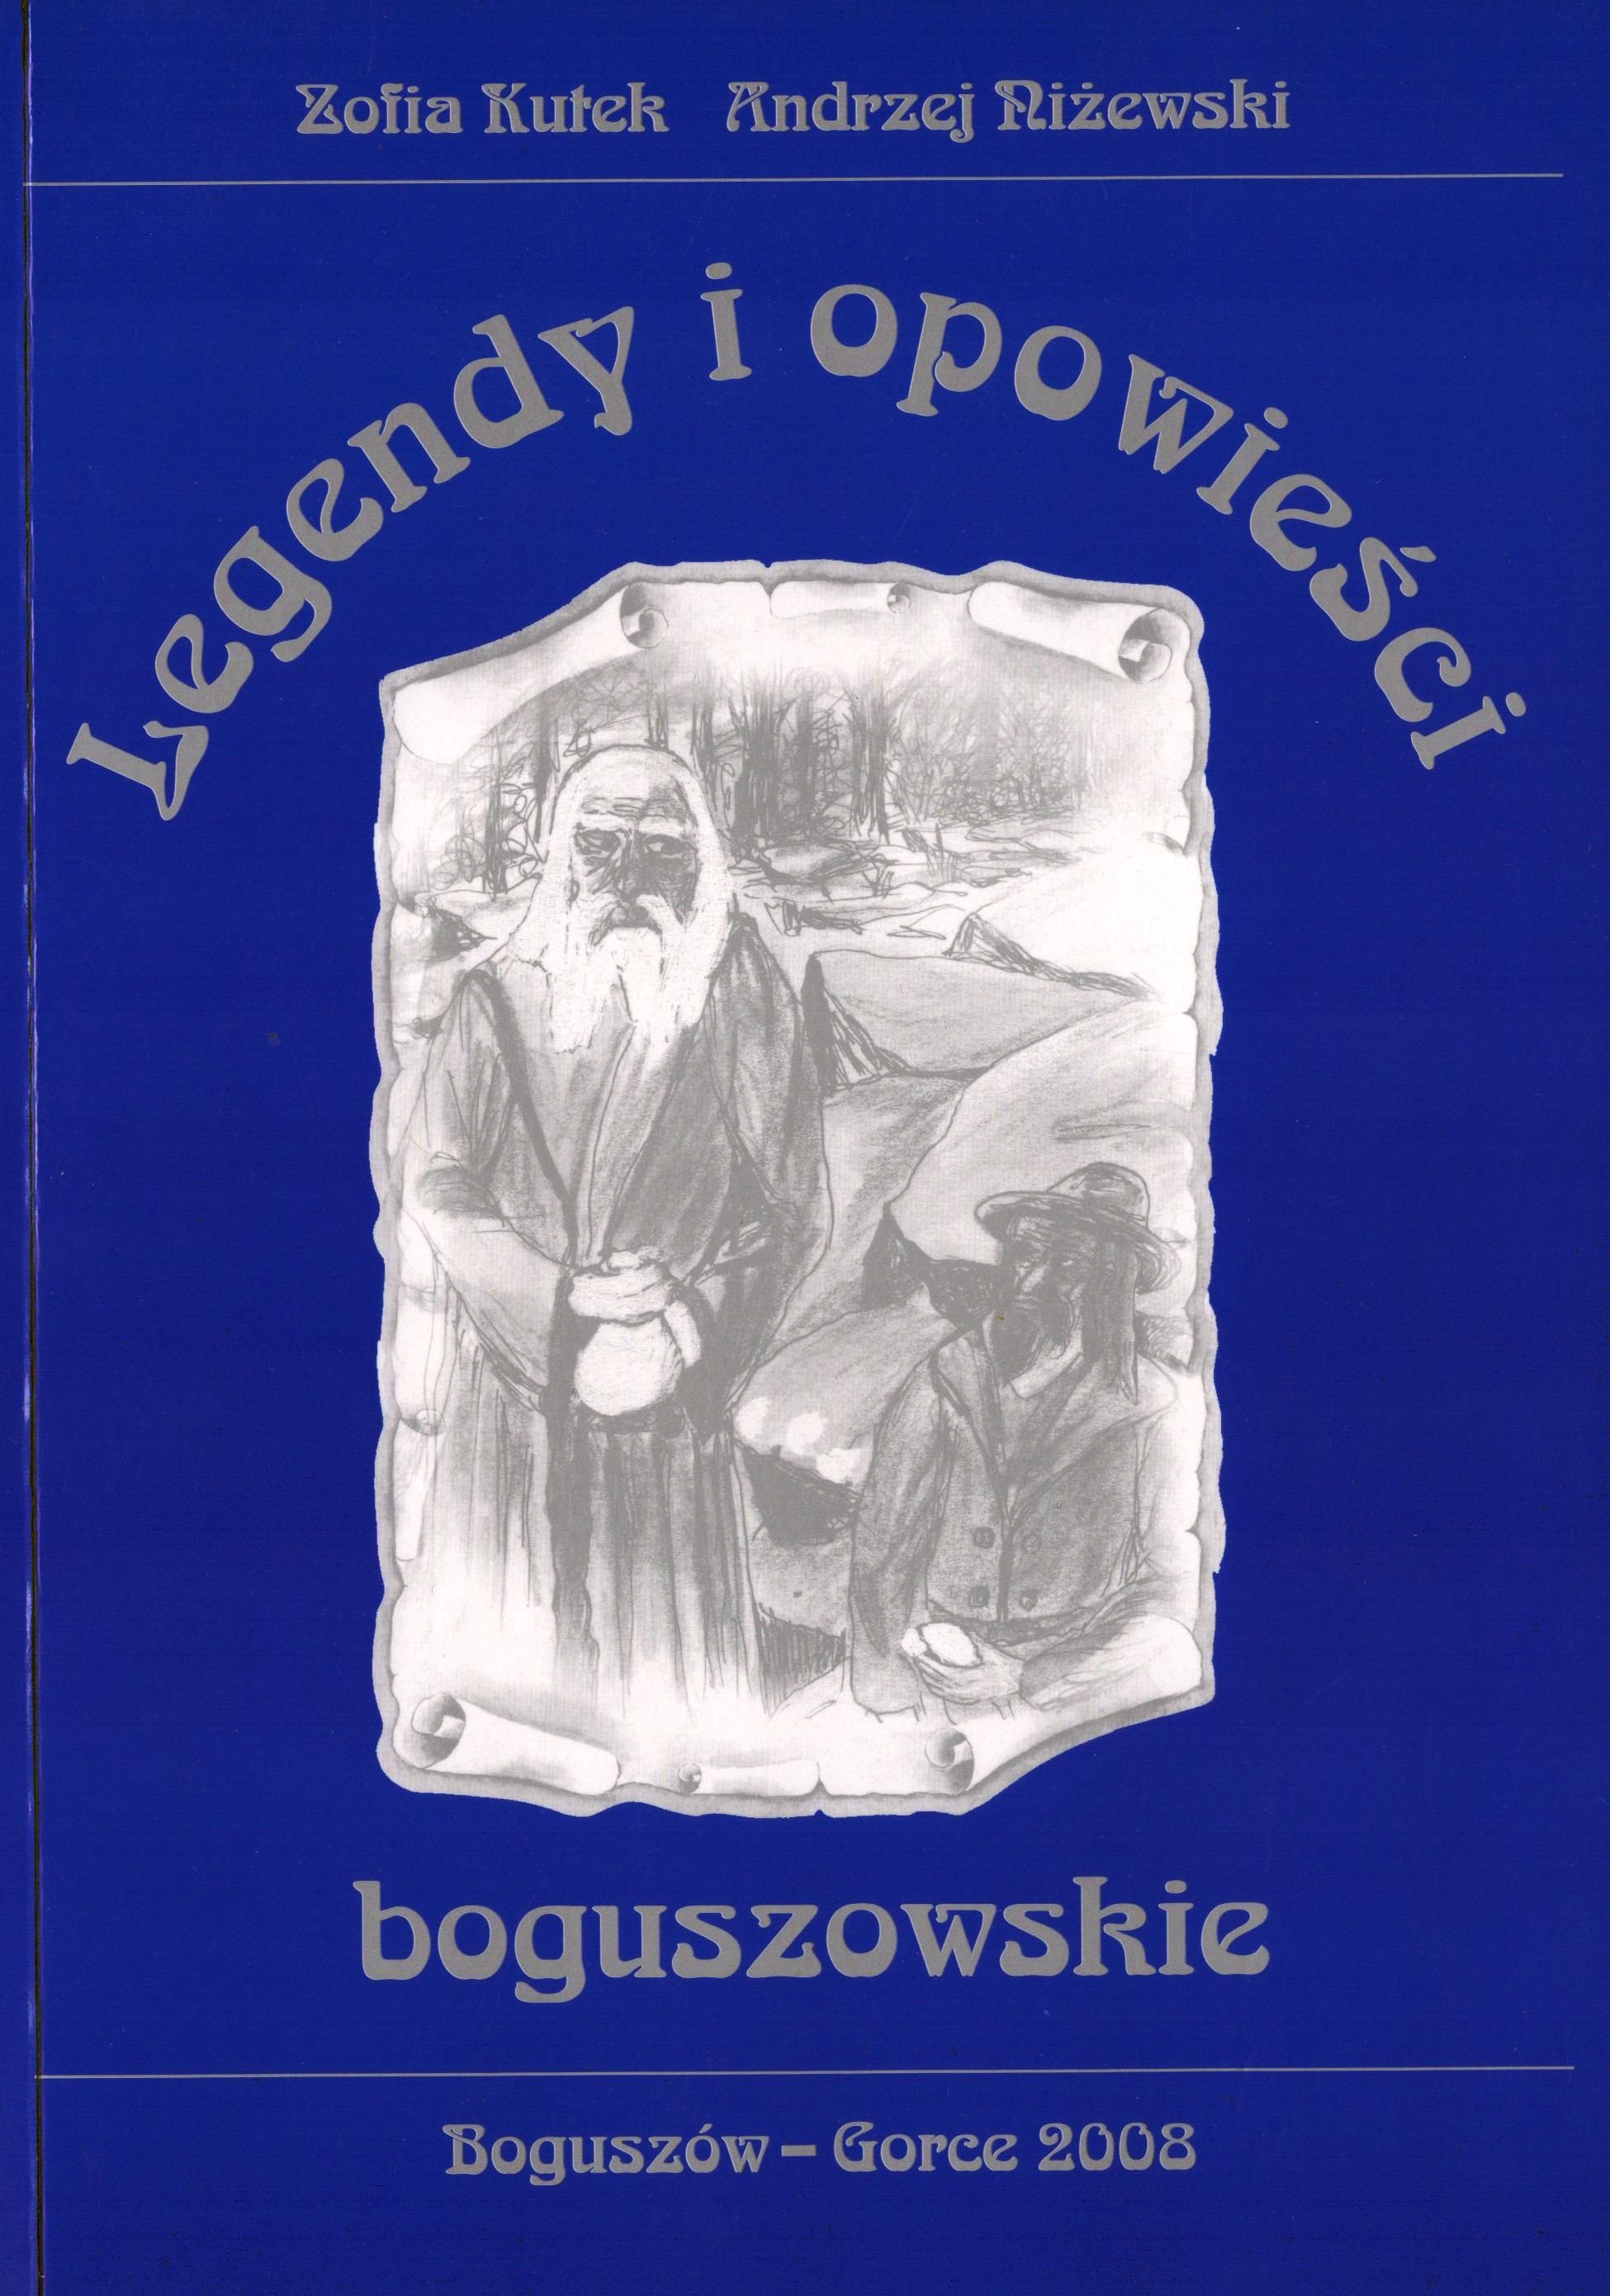 Legendy i opowiesci boguszowskie (Archiv SAXONIA-FREIBERG-STIFTUNG CC BY-NC-SA)